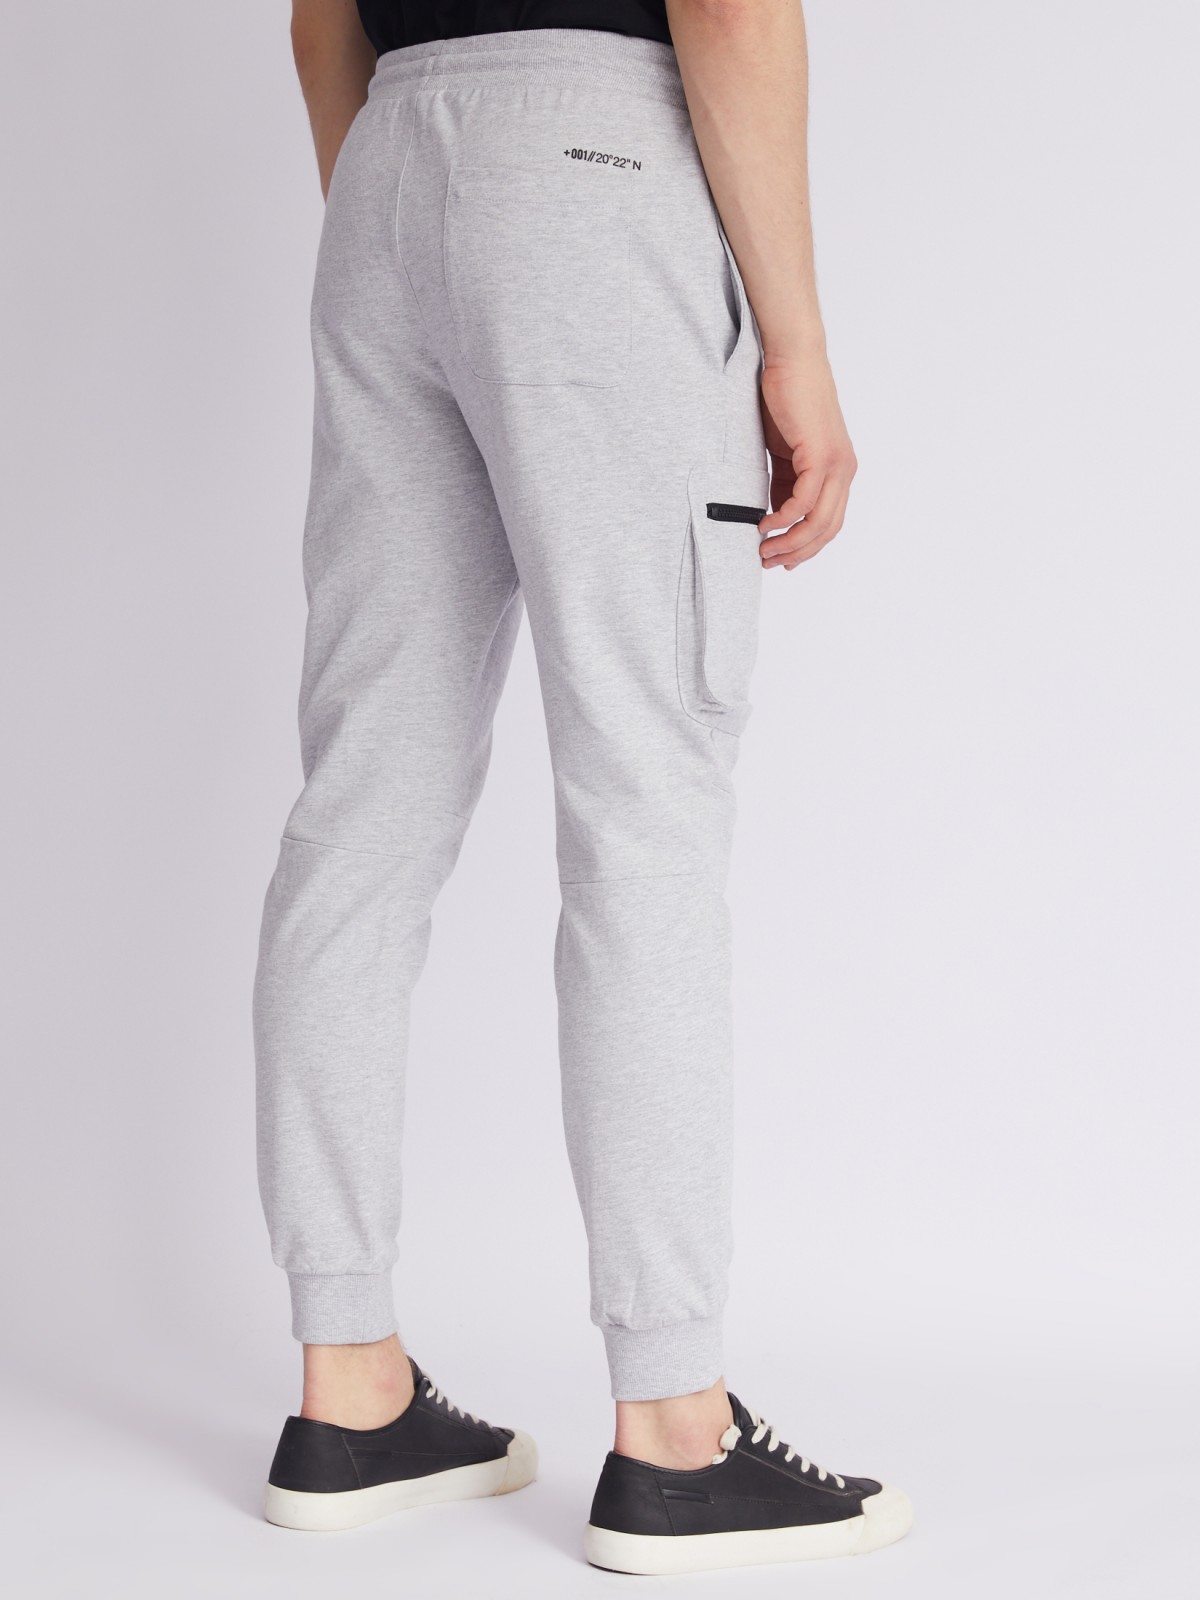 Трикотажные брюки-джоггеры с карманами карго zolla 21231768Q101, цвет серый, размер S - фото 5